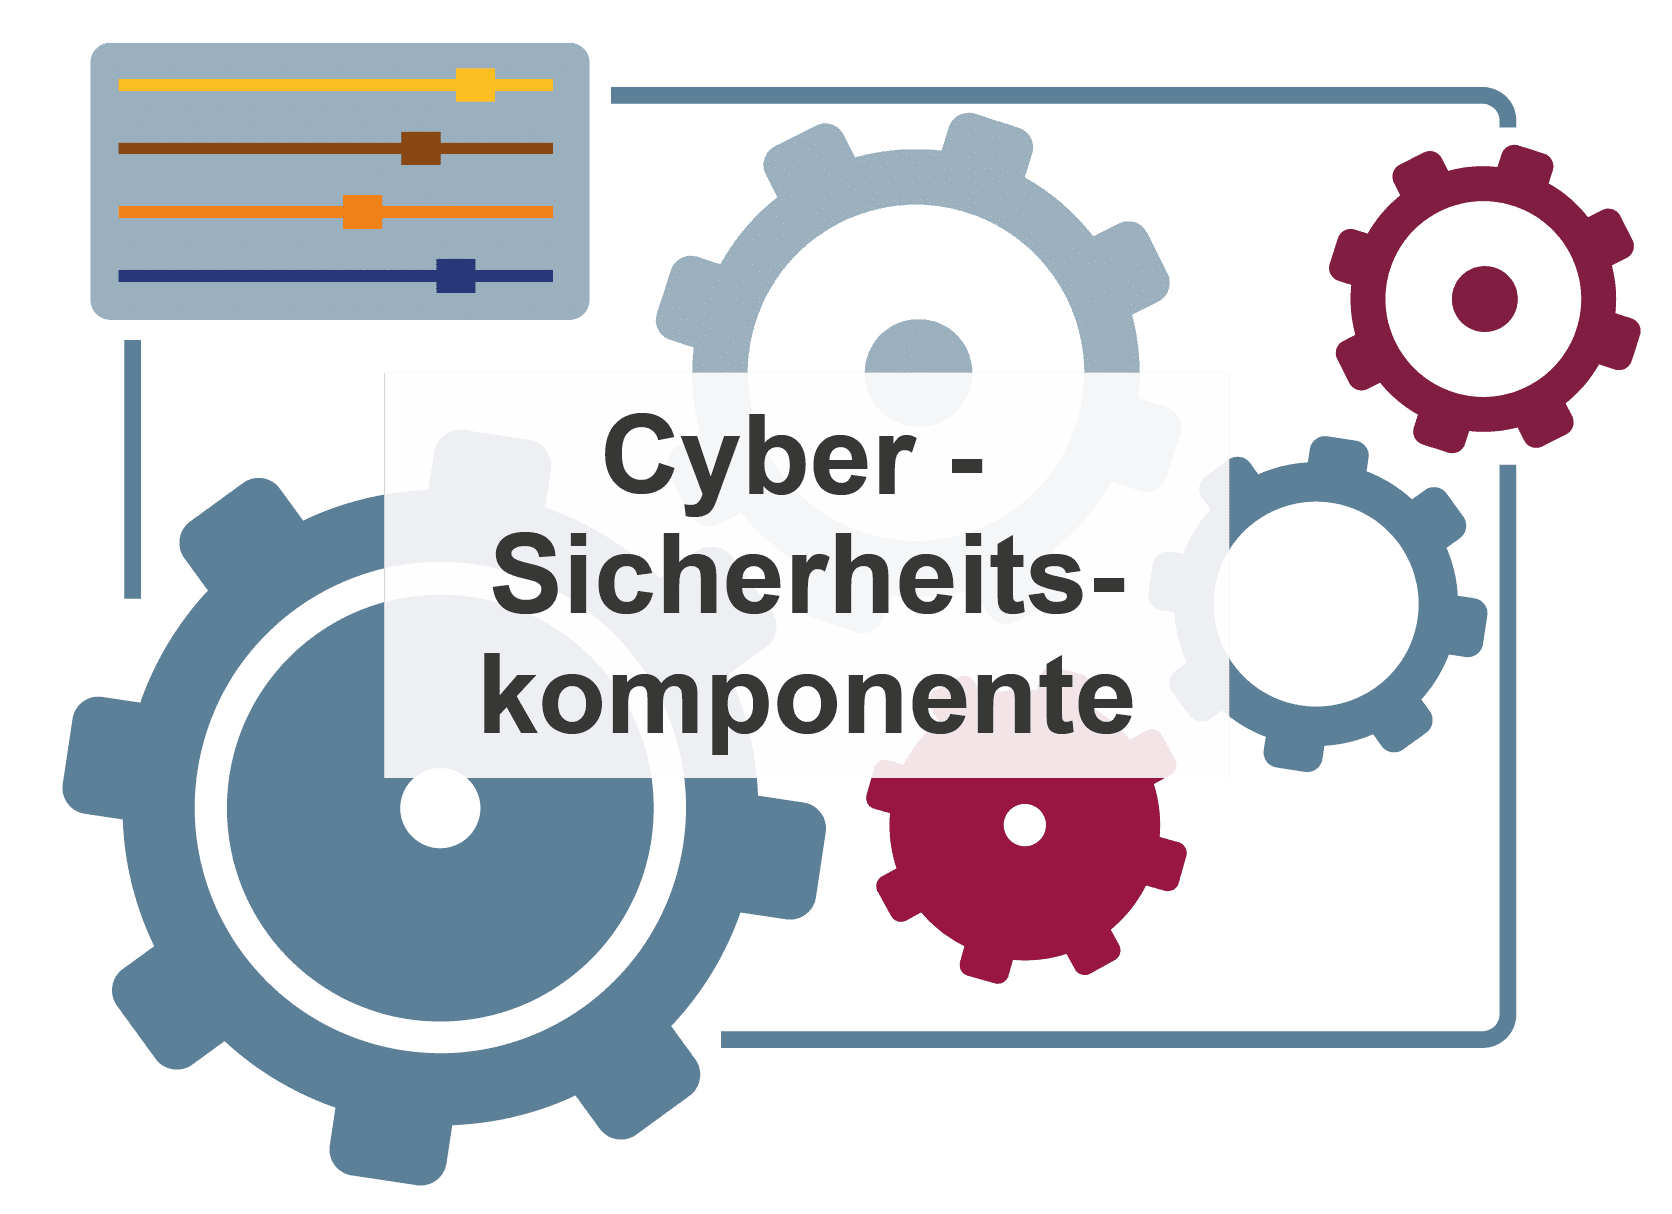 Cyber-Sicherheitskomponente als Komponentenmodells